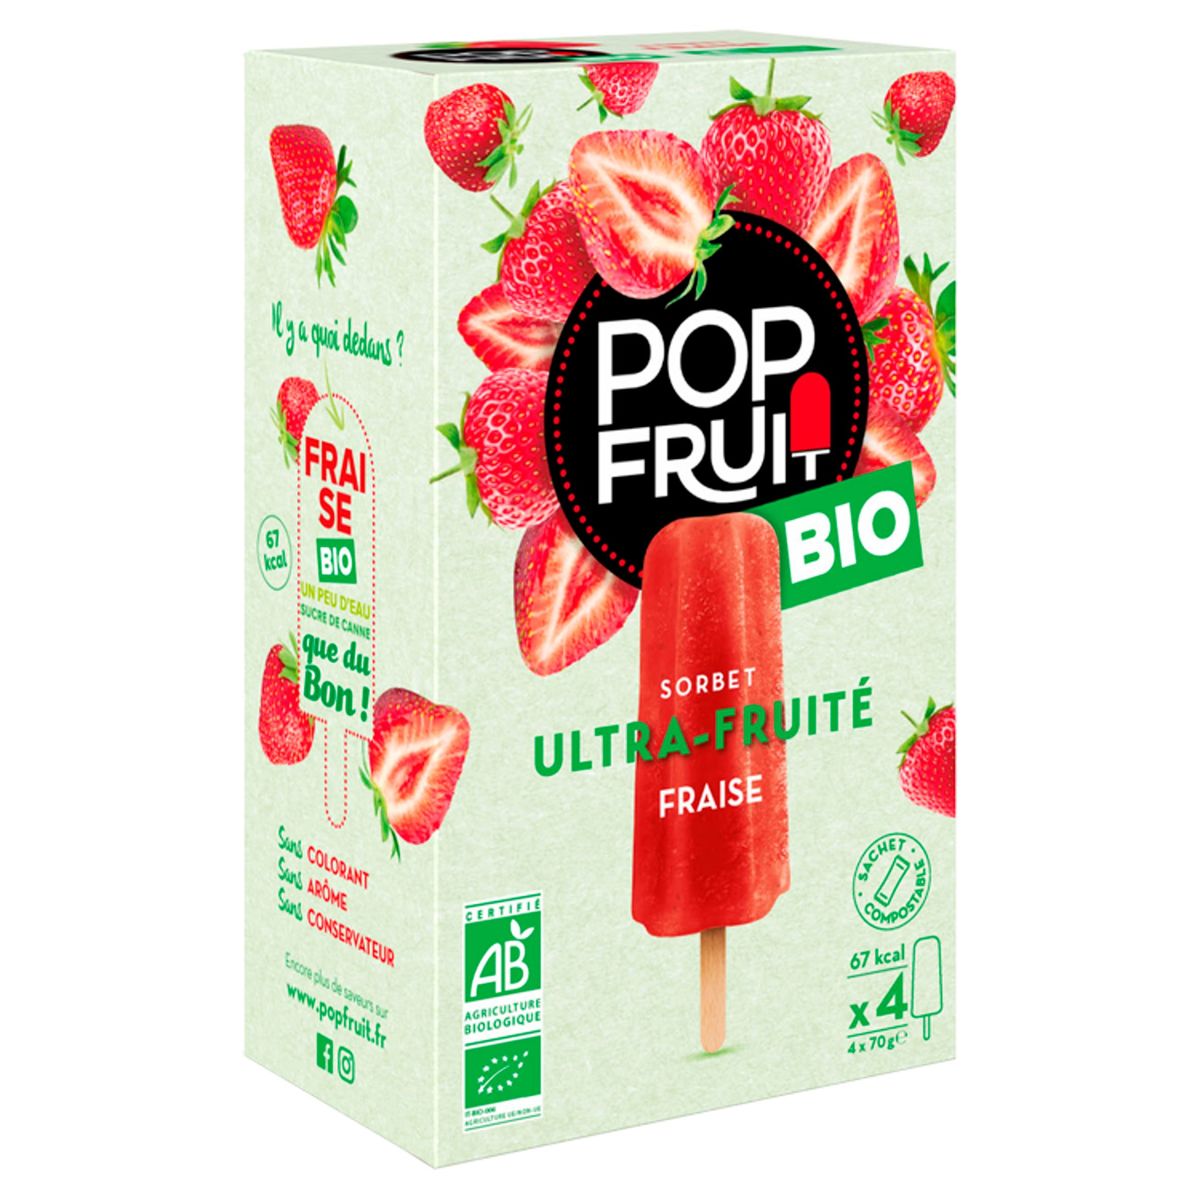 Pop Fruit Bio Organic Sorbet Ultra-Fruité Fraise 4 x 70 g